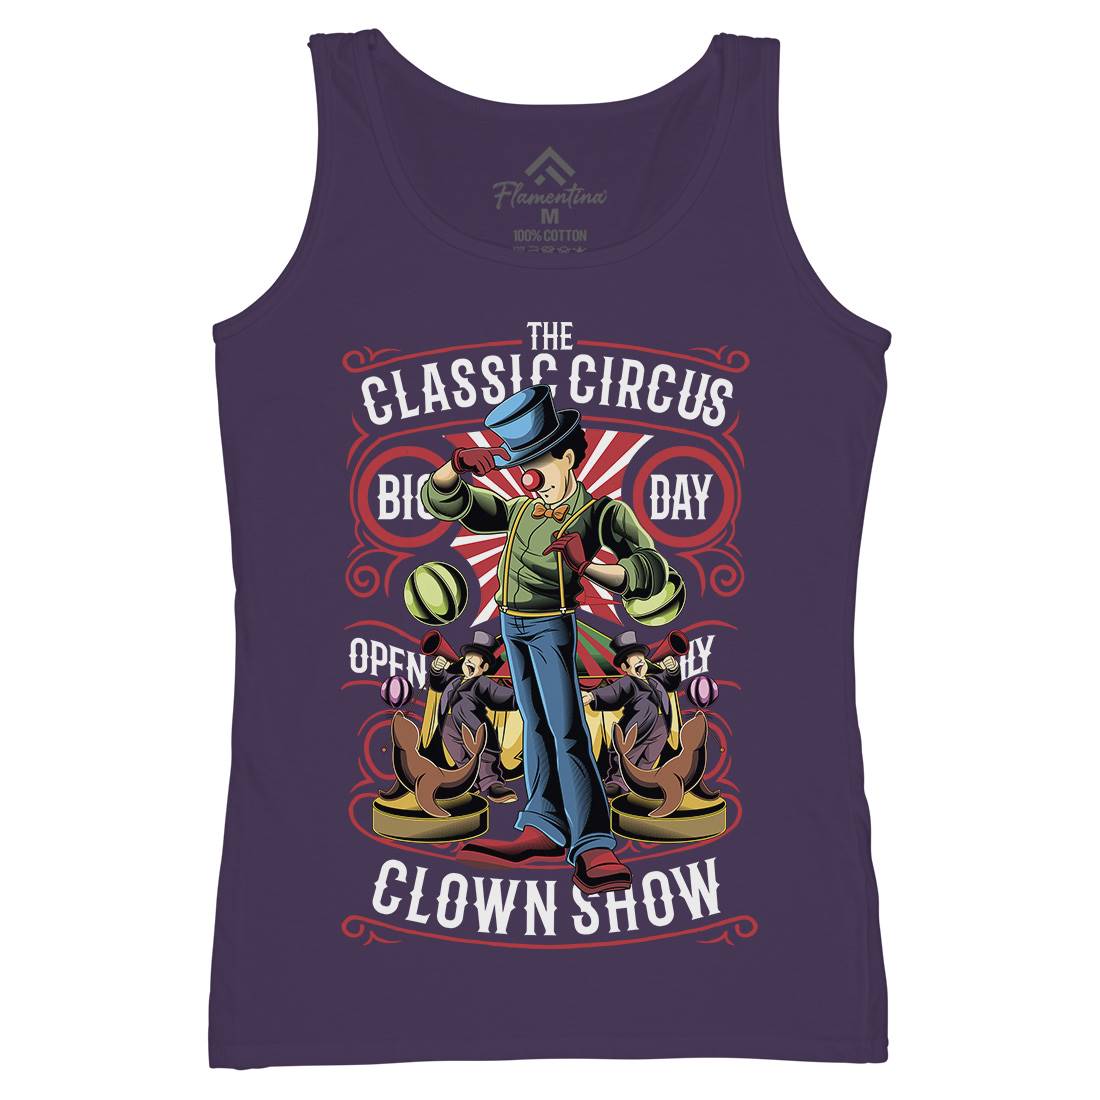 Classic Circus Womens Organic Tank Top Vest Retro C461